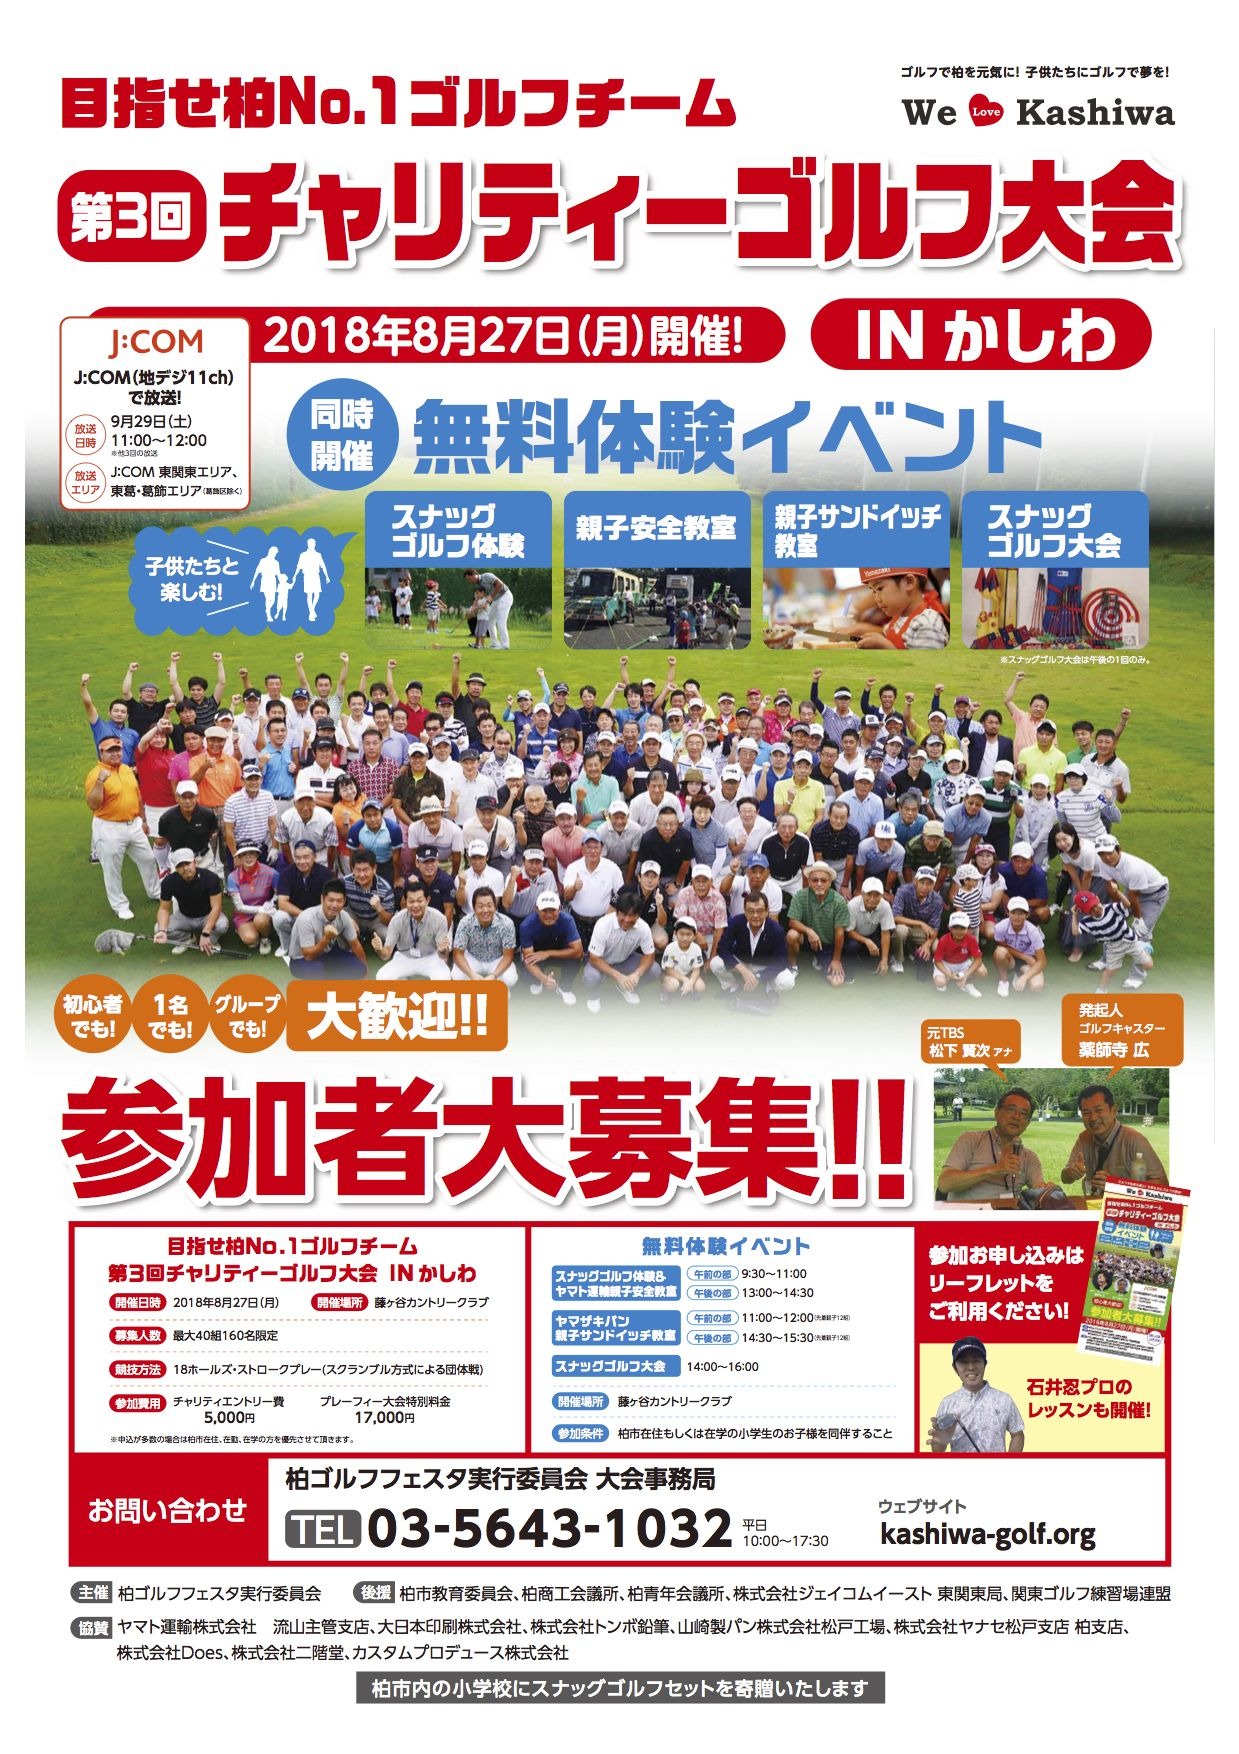 ゴルフの楽しさを体感できる 柏ゴルフフェスタ 8月開催 Cycle やわらかスポーツ情報サイト